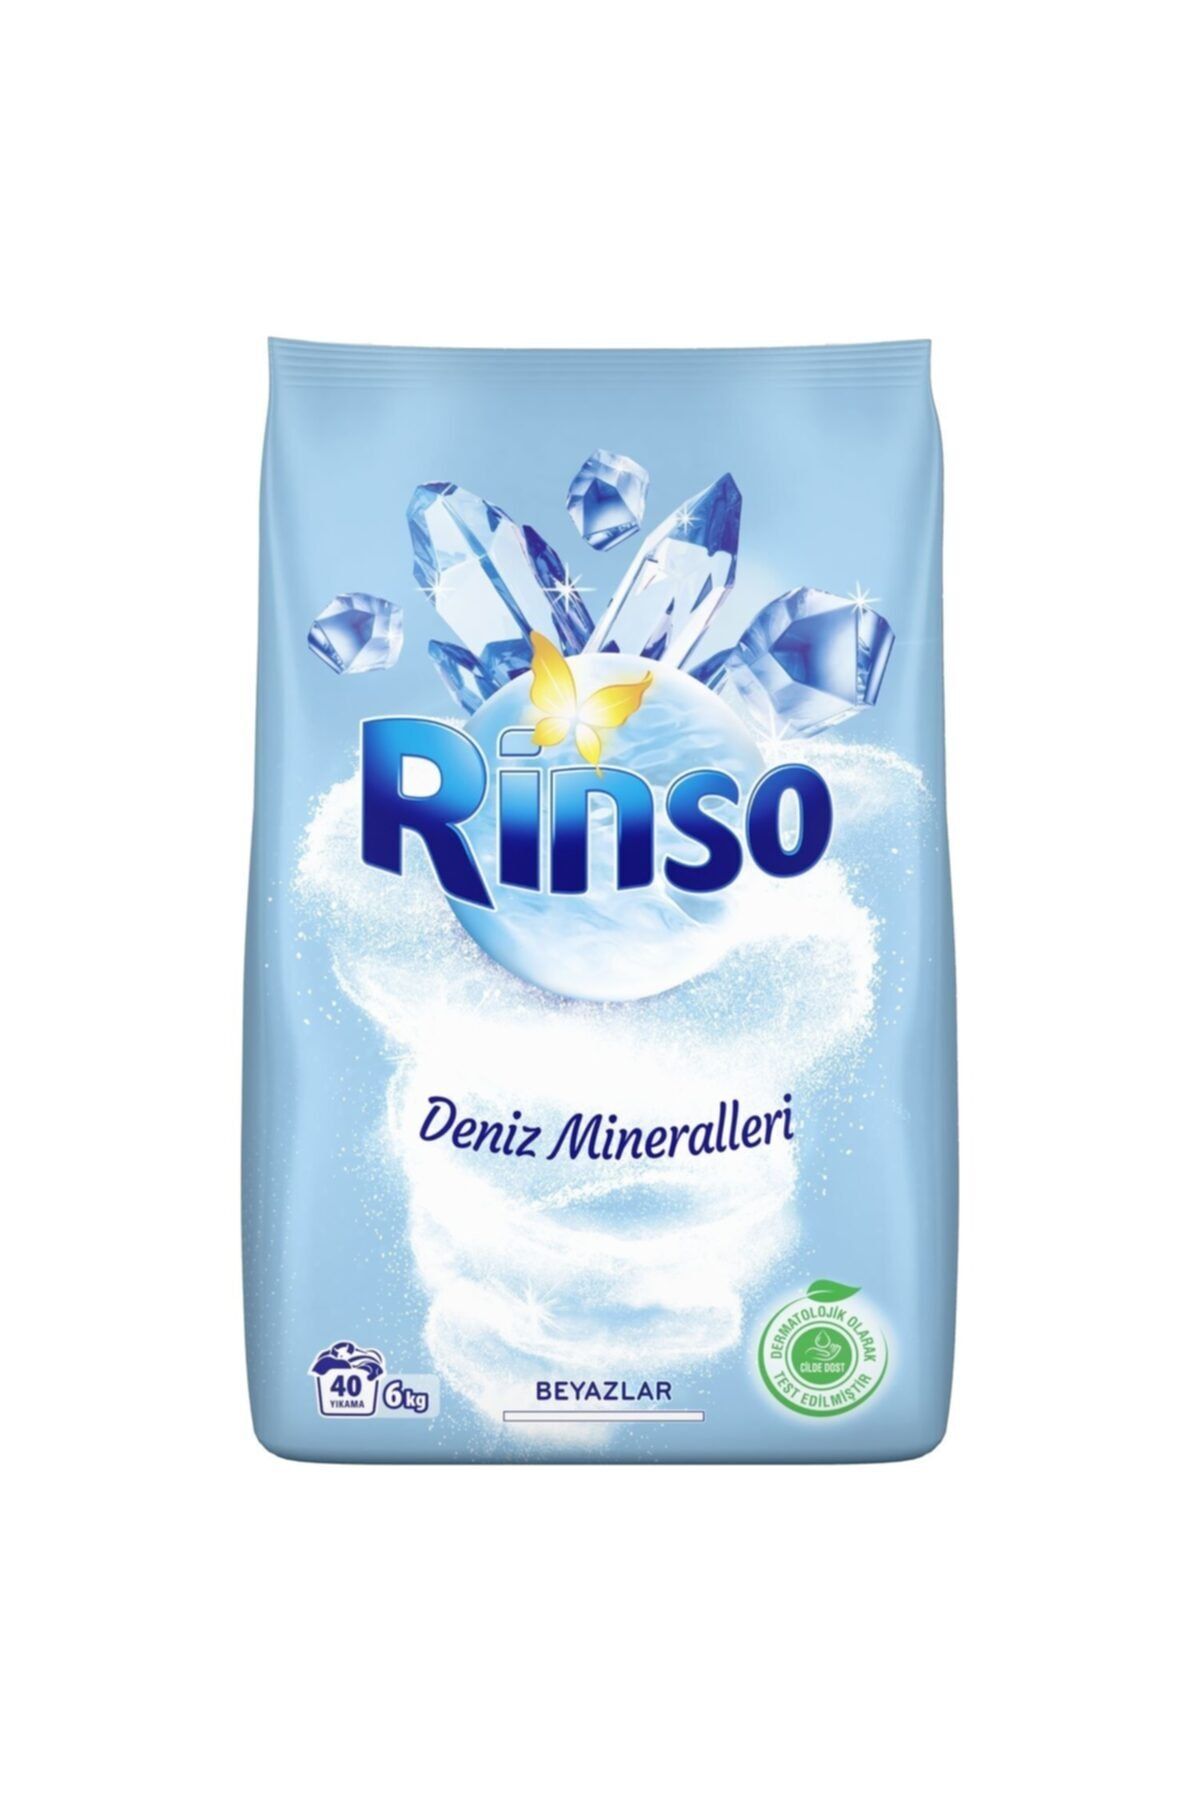 Rinso Deniz Mineralleri Beyazlar Için Toz Çamaşır Deterjanı 6 Kg 40 Yıkama